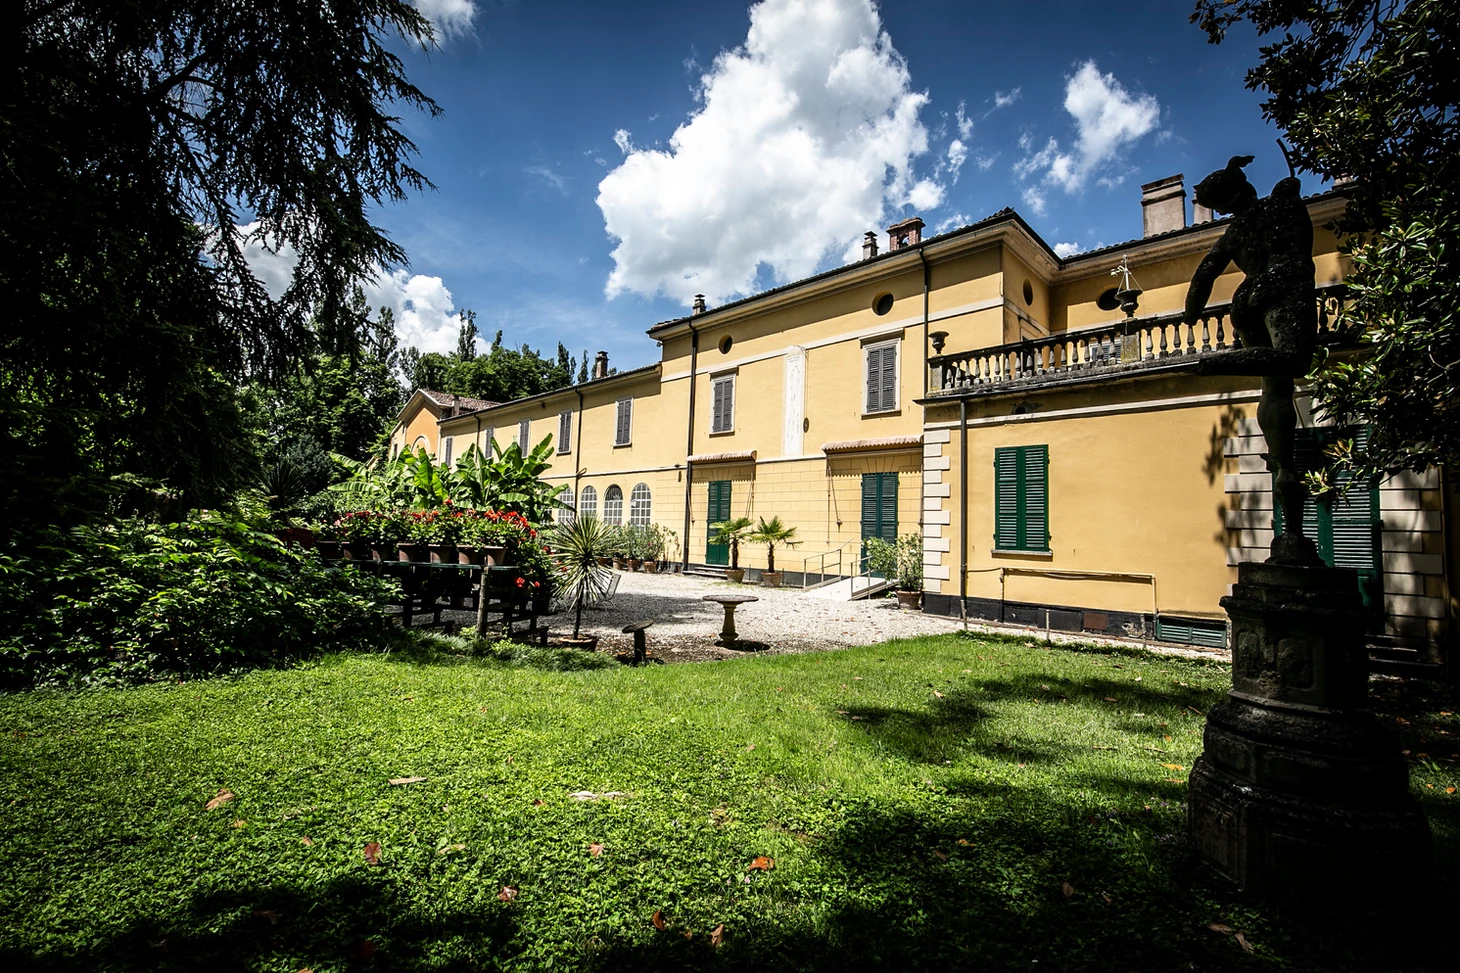 Villa Sant'agata (foto Federica Scarpioni)